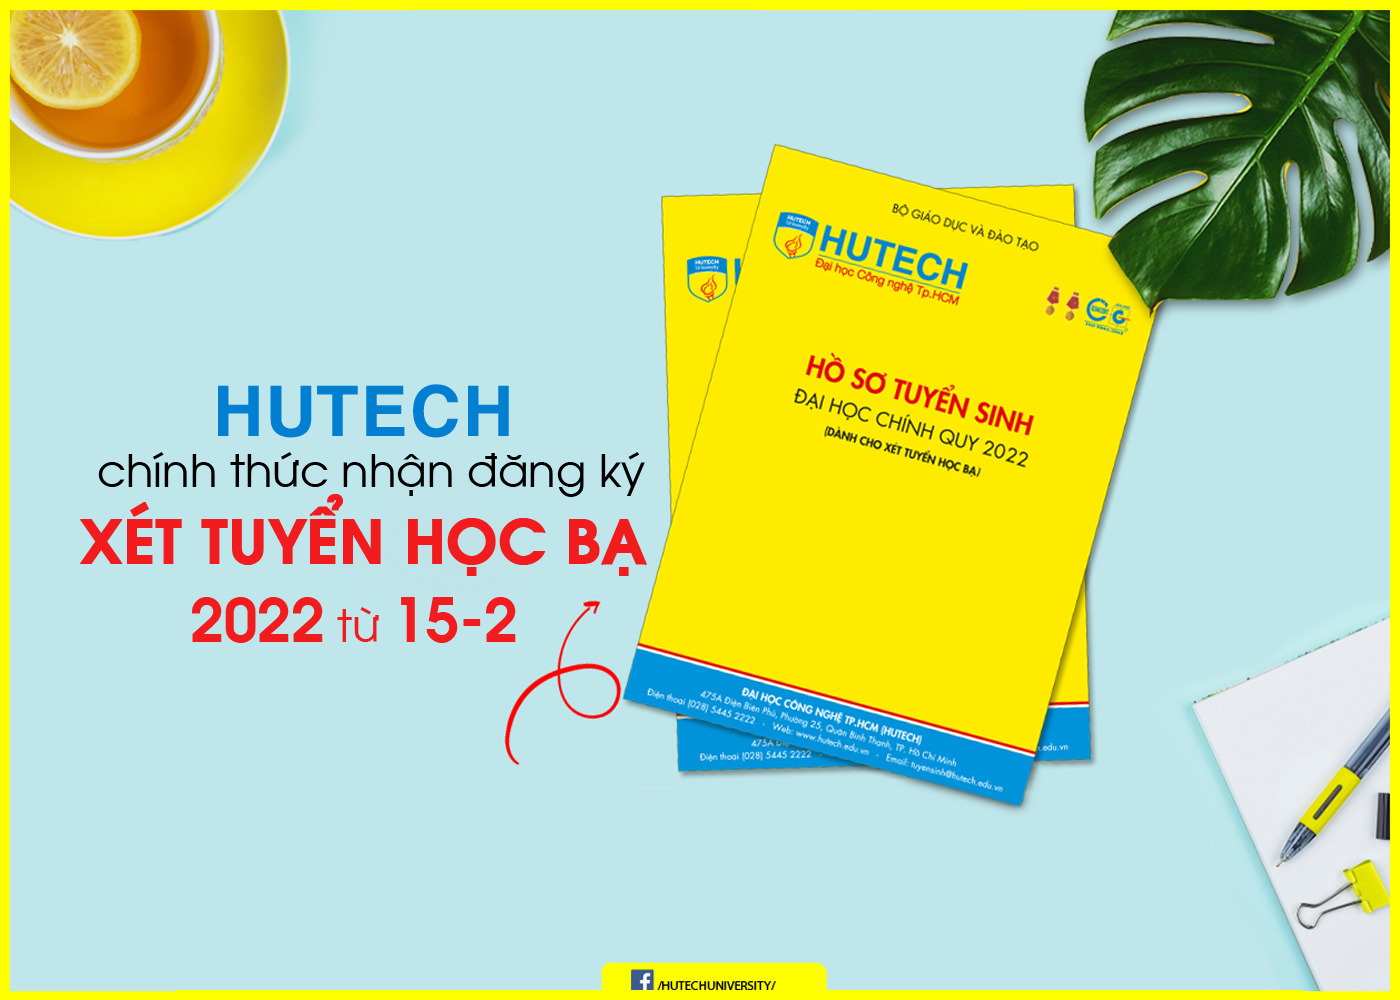 HUTECH chính thức nhận đăng ký xét tuyển học bạ 2022 từ 15-2 - Ảnh 1